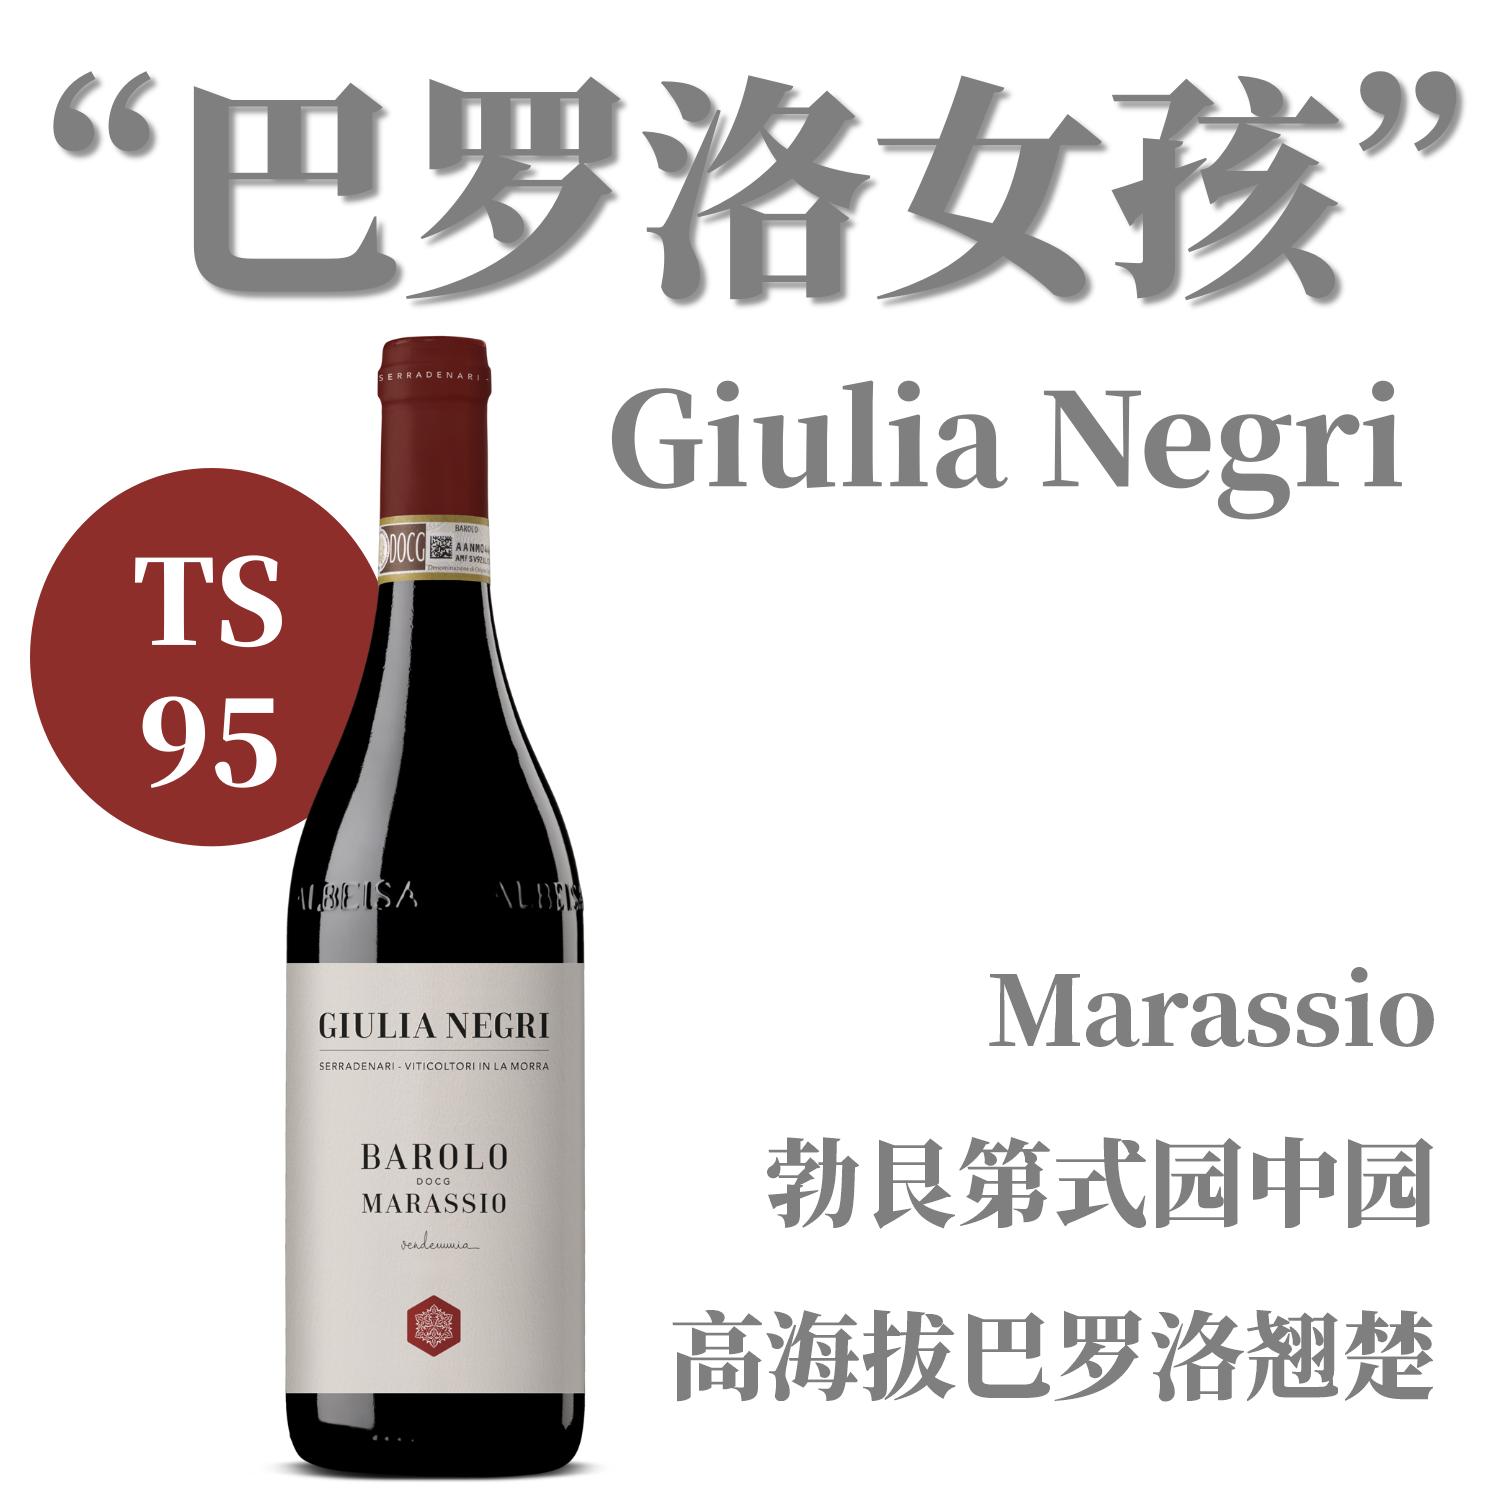 【仅6支·TS95精细高坡巴罗洛园中园】  2018 黑色朱利亚酒庄马拉斯干红葡萄酒   Negri Giulia Barolo Rouge 'Marassio'